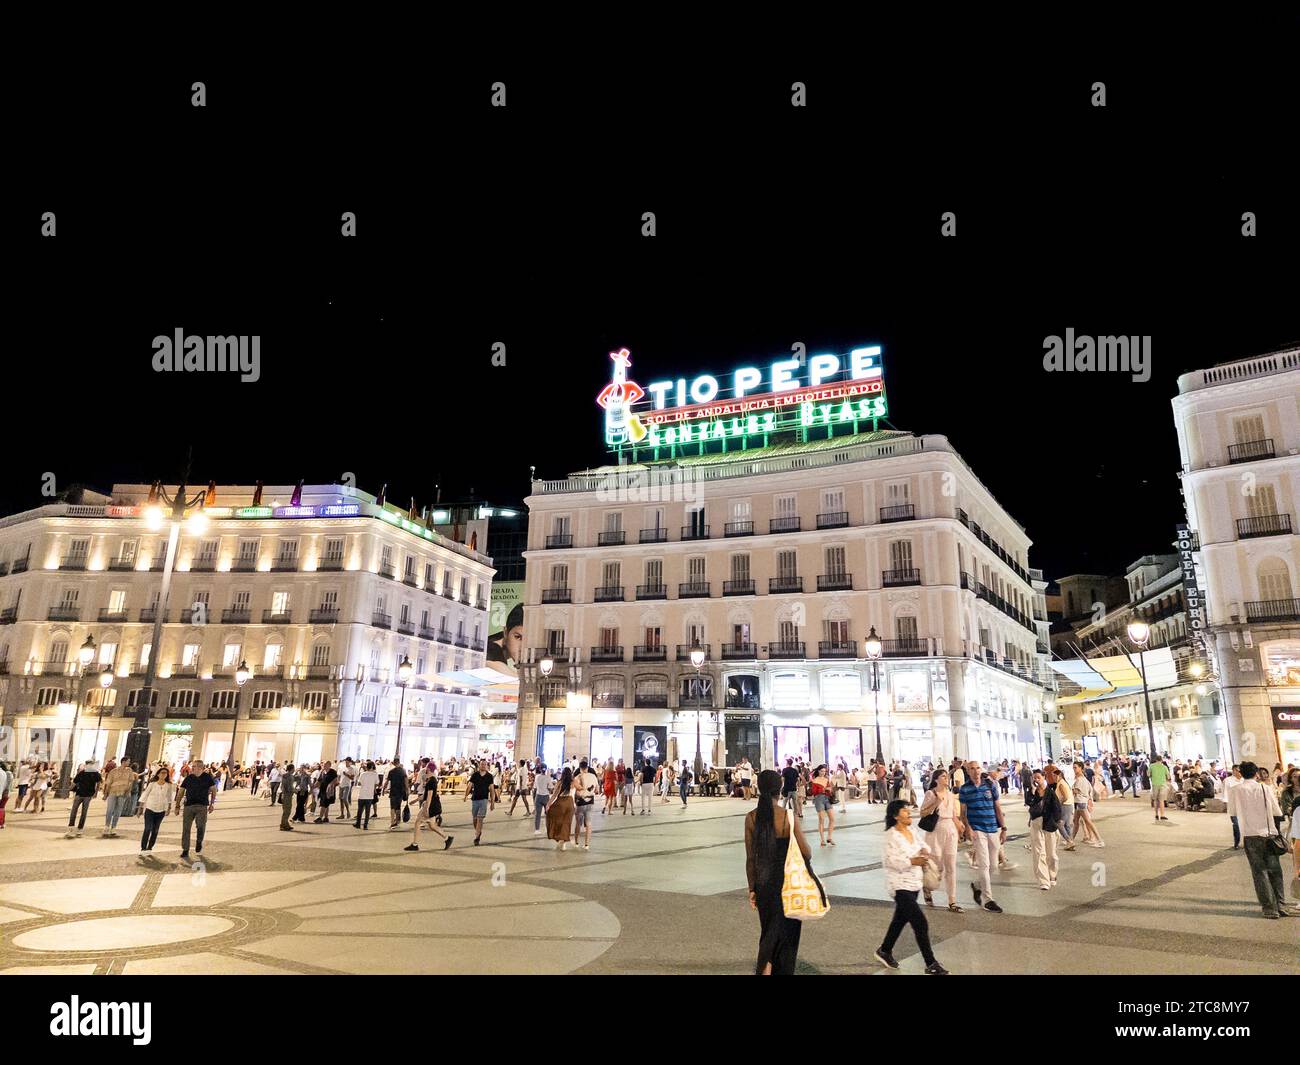 Madrid, Spanien - 29. August 2023: Das ikonische Tio Pepe Neonschild auf einem Gebäude, das die geschäftige Puerta del Sol bei Nacht darstellt Stockfoto